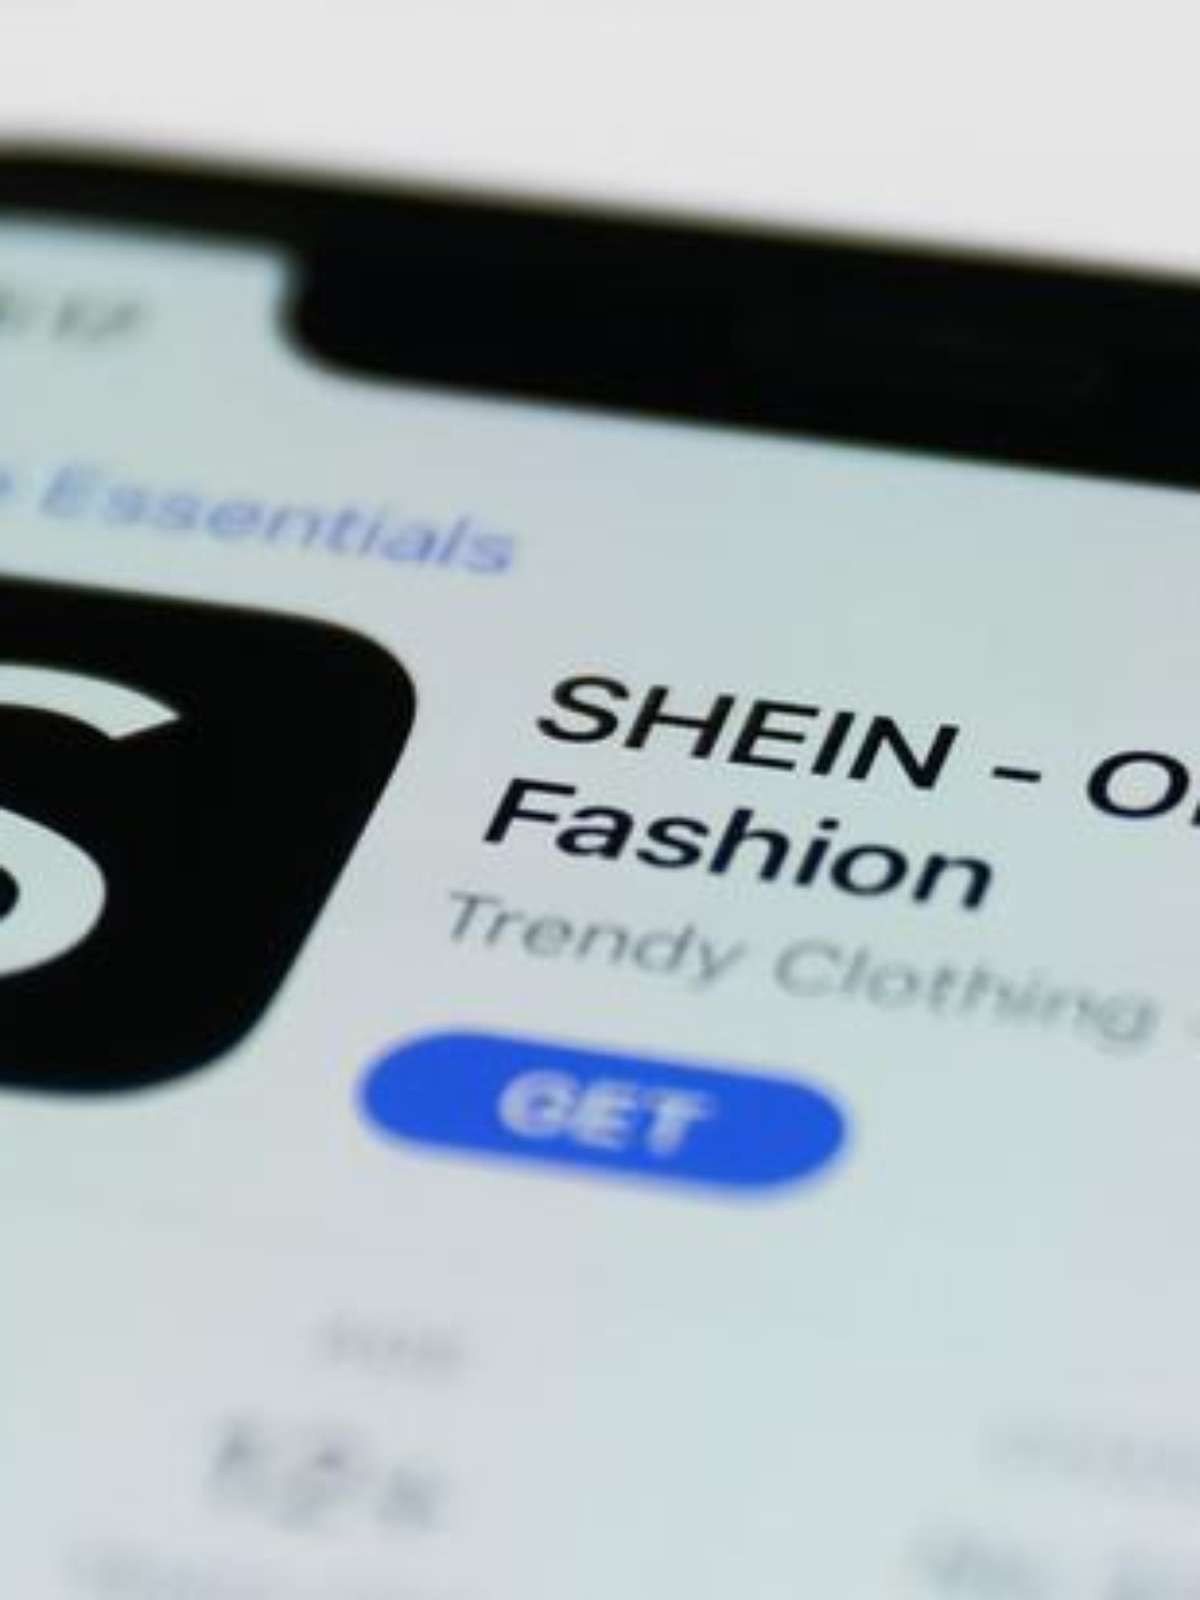 Shein anuncia que irá pagar o ICMS de compras até US$ 50 - TecMundo